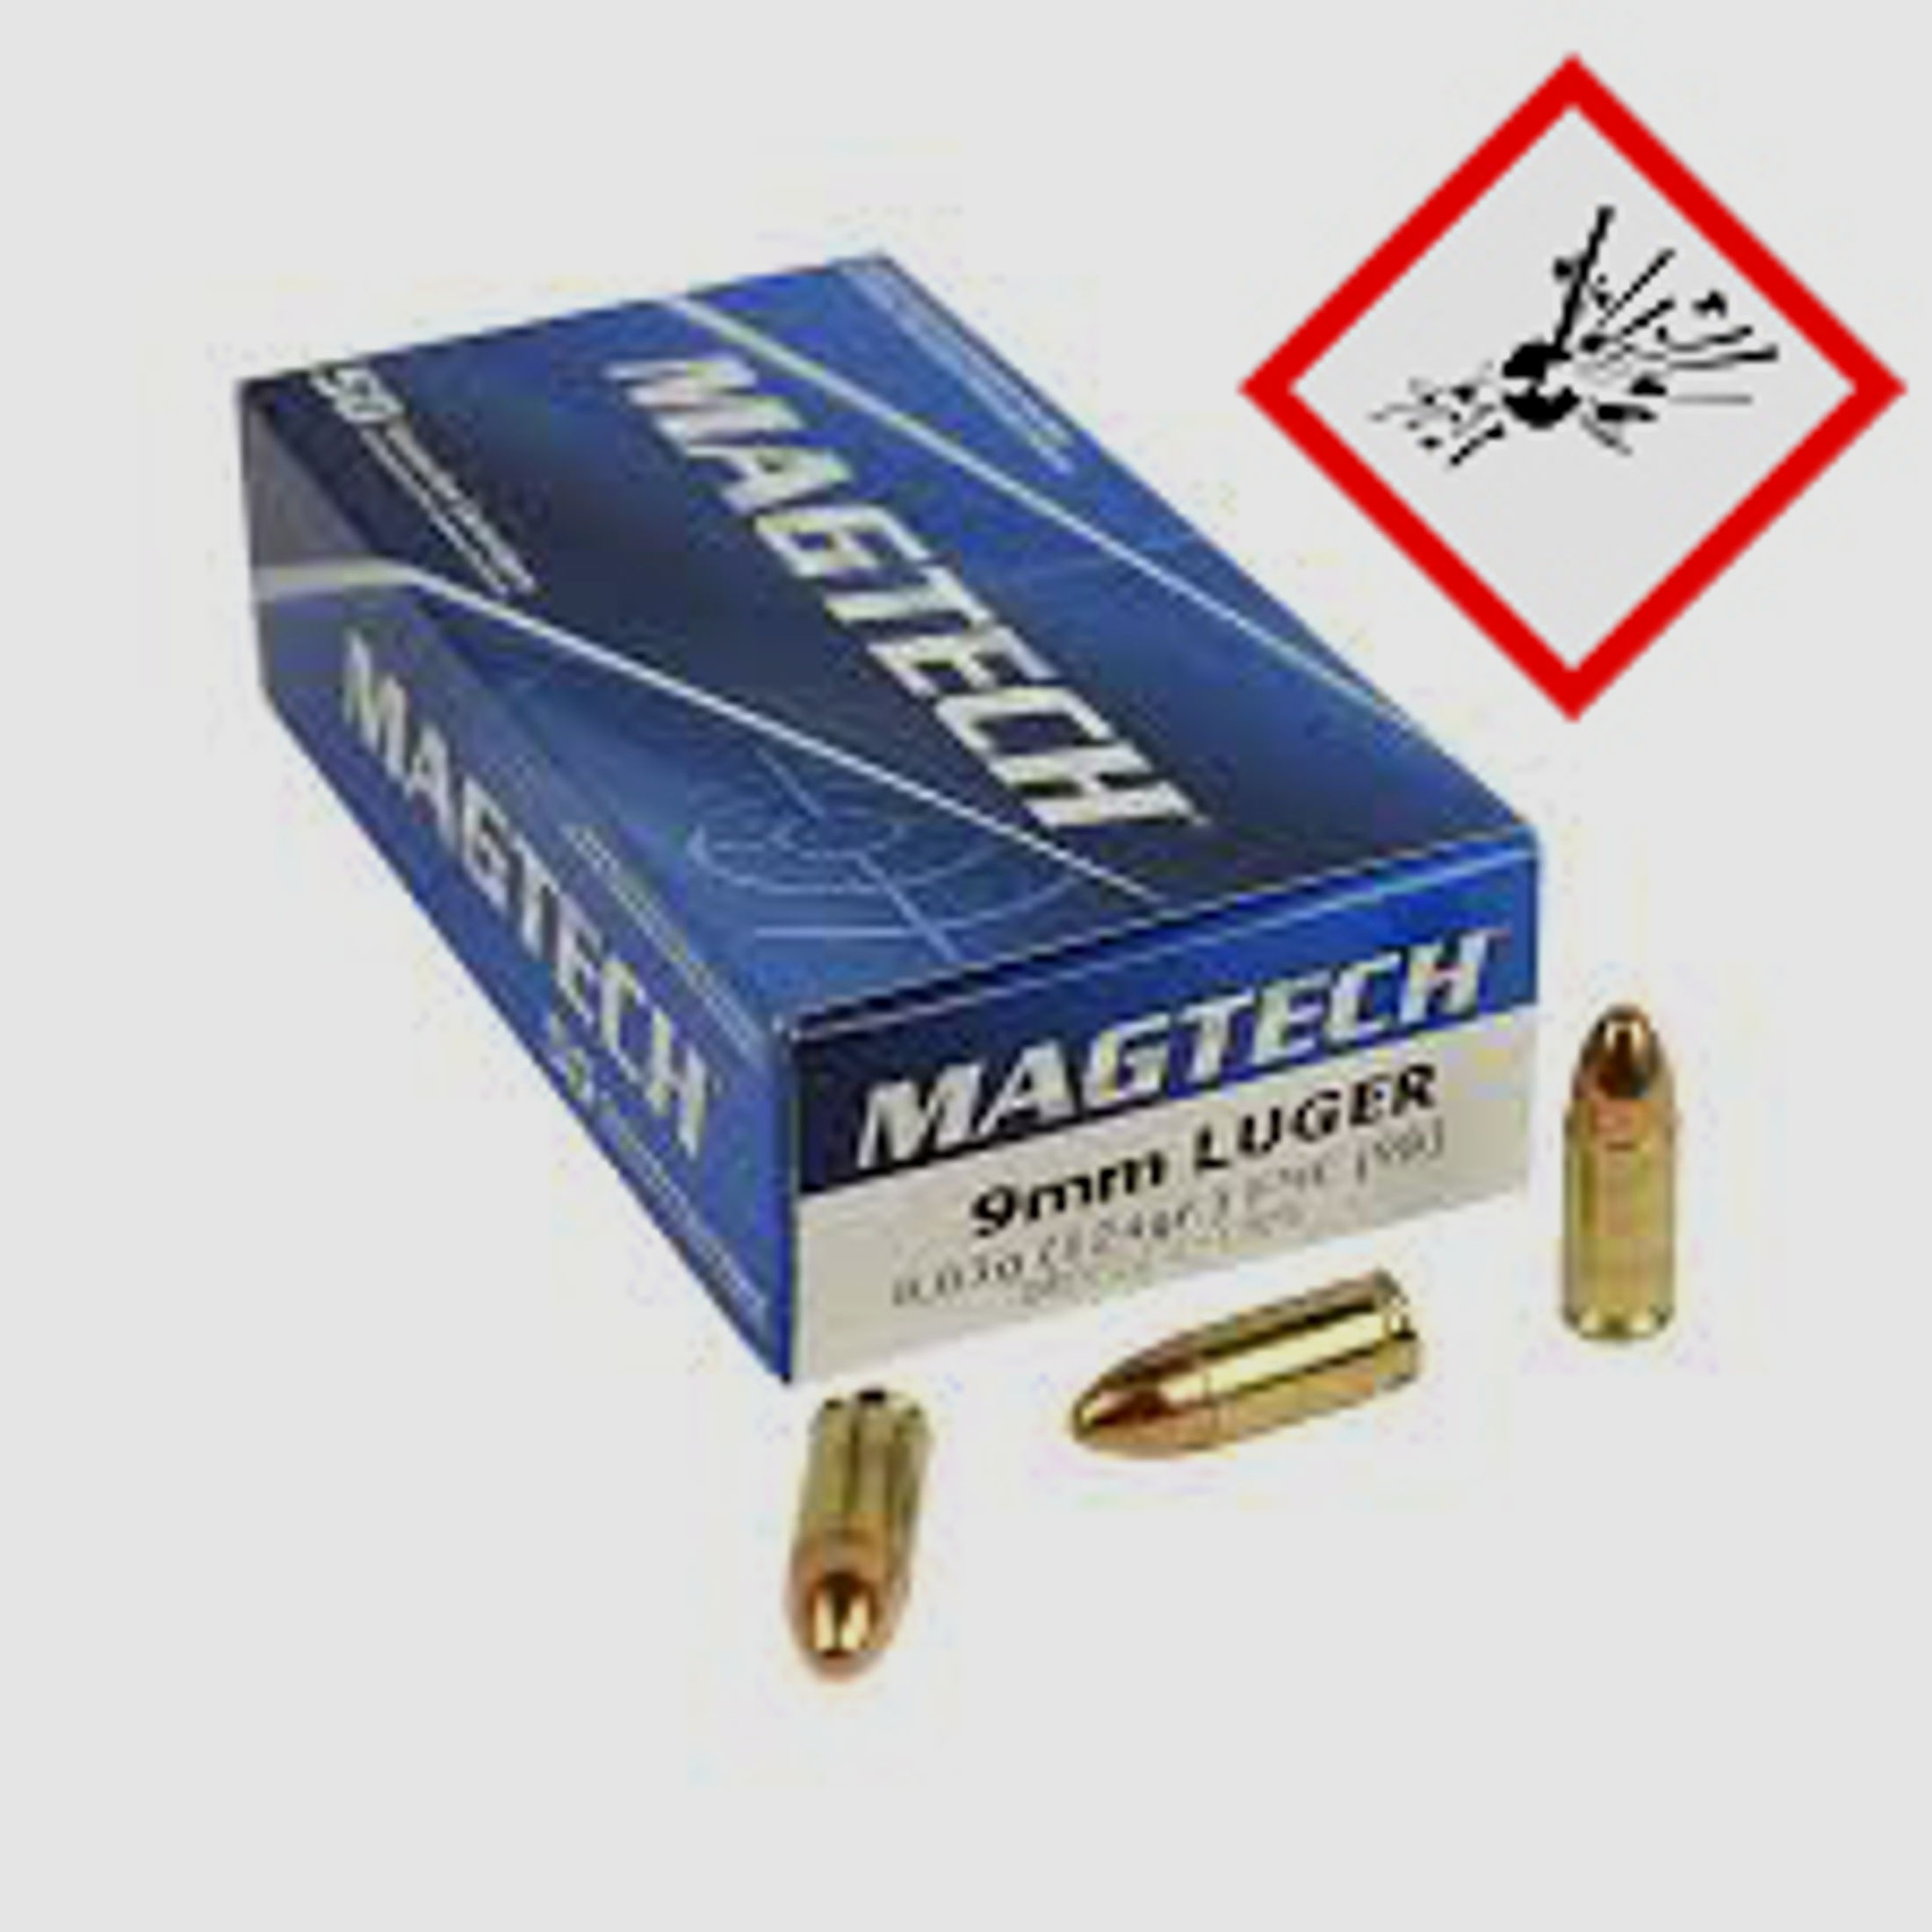 Magtech Pistolenpatrone 9mm Luger FMJ 124grs